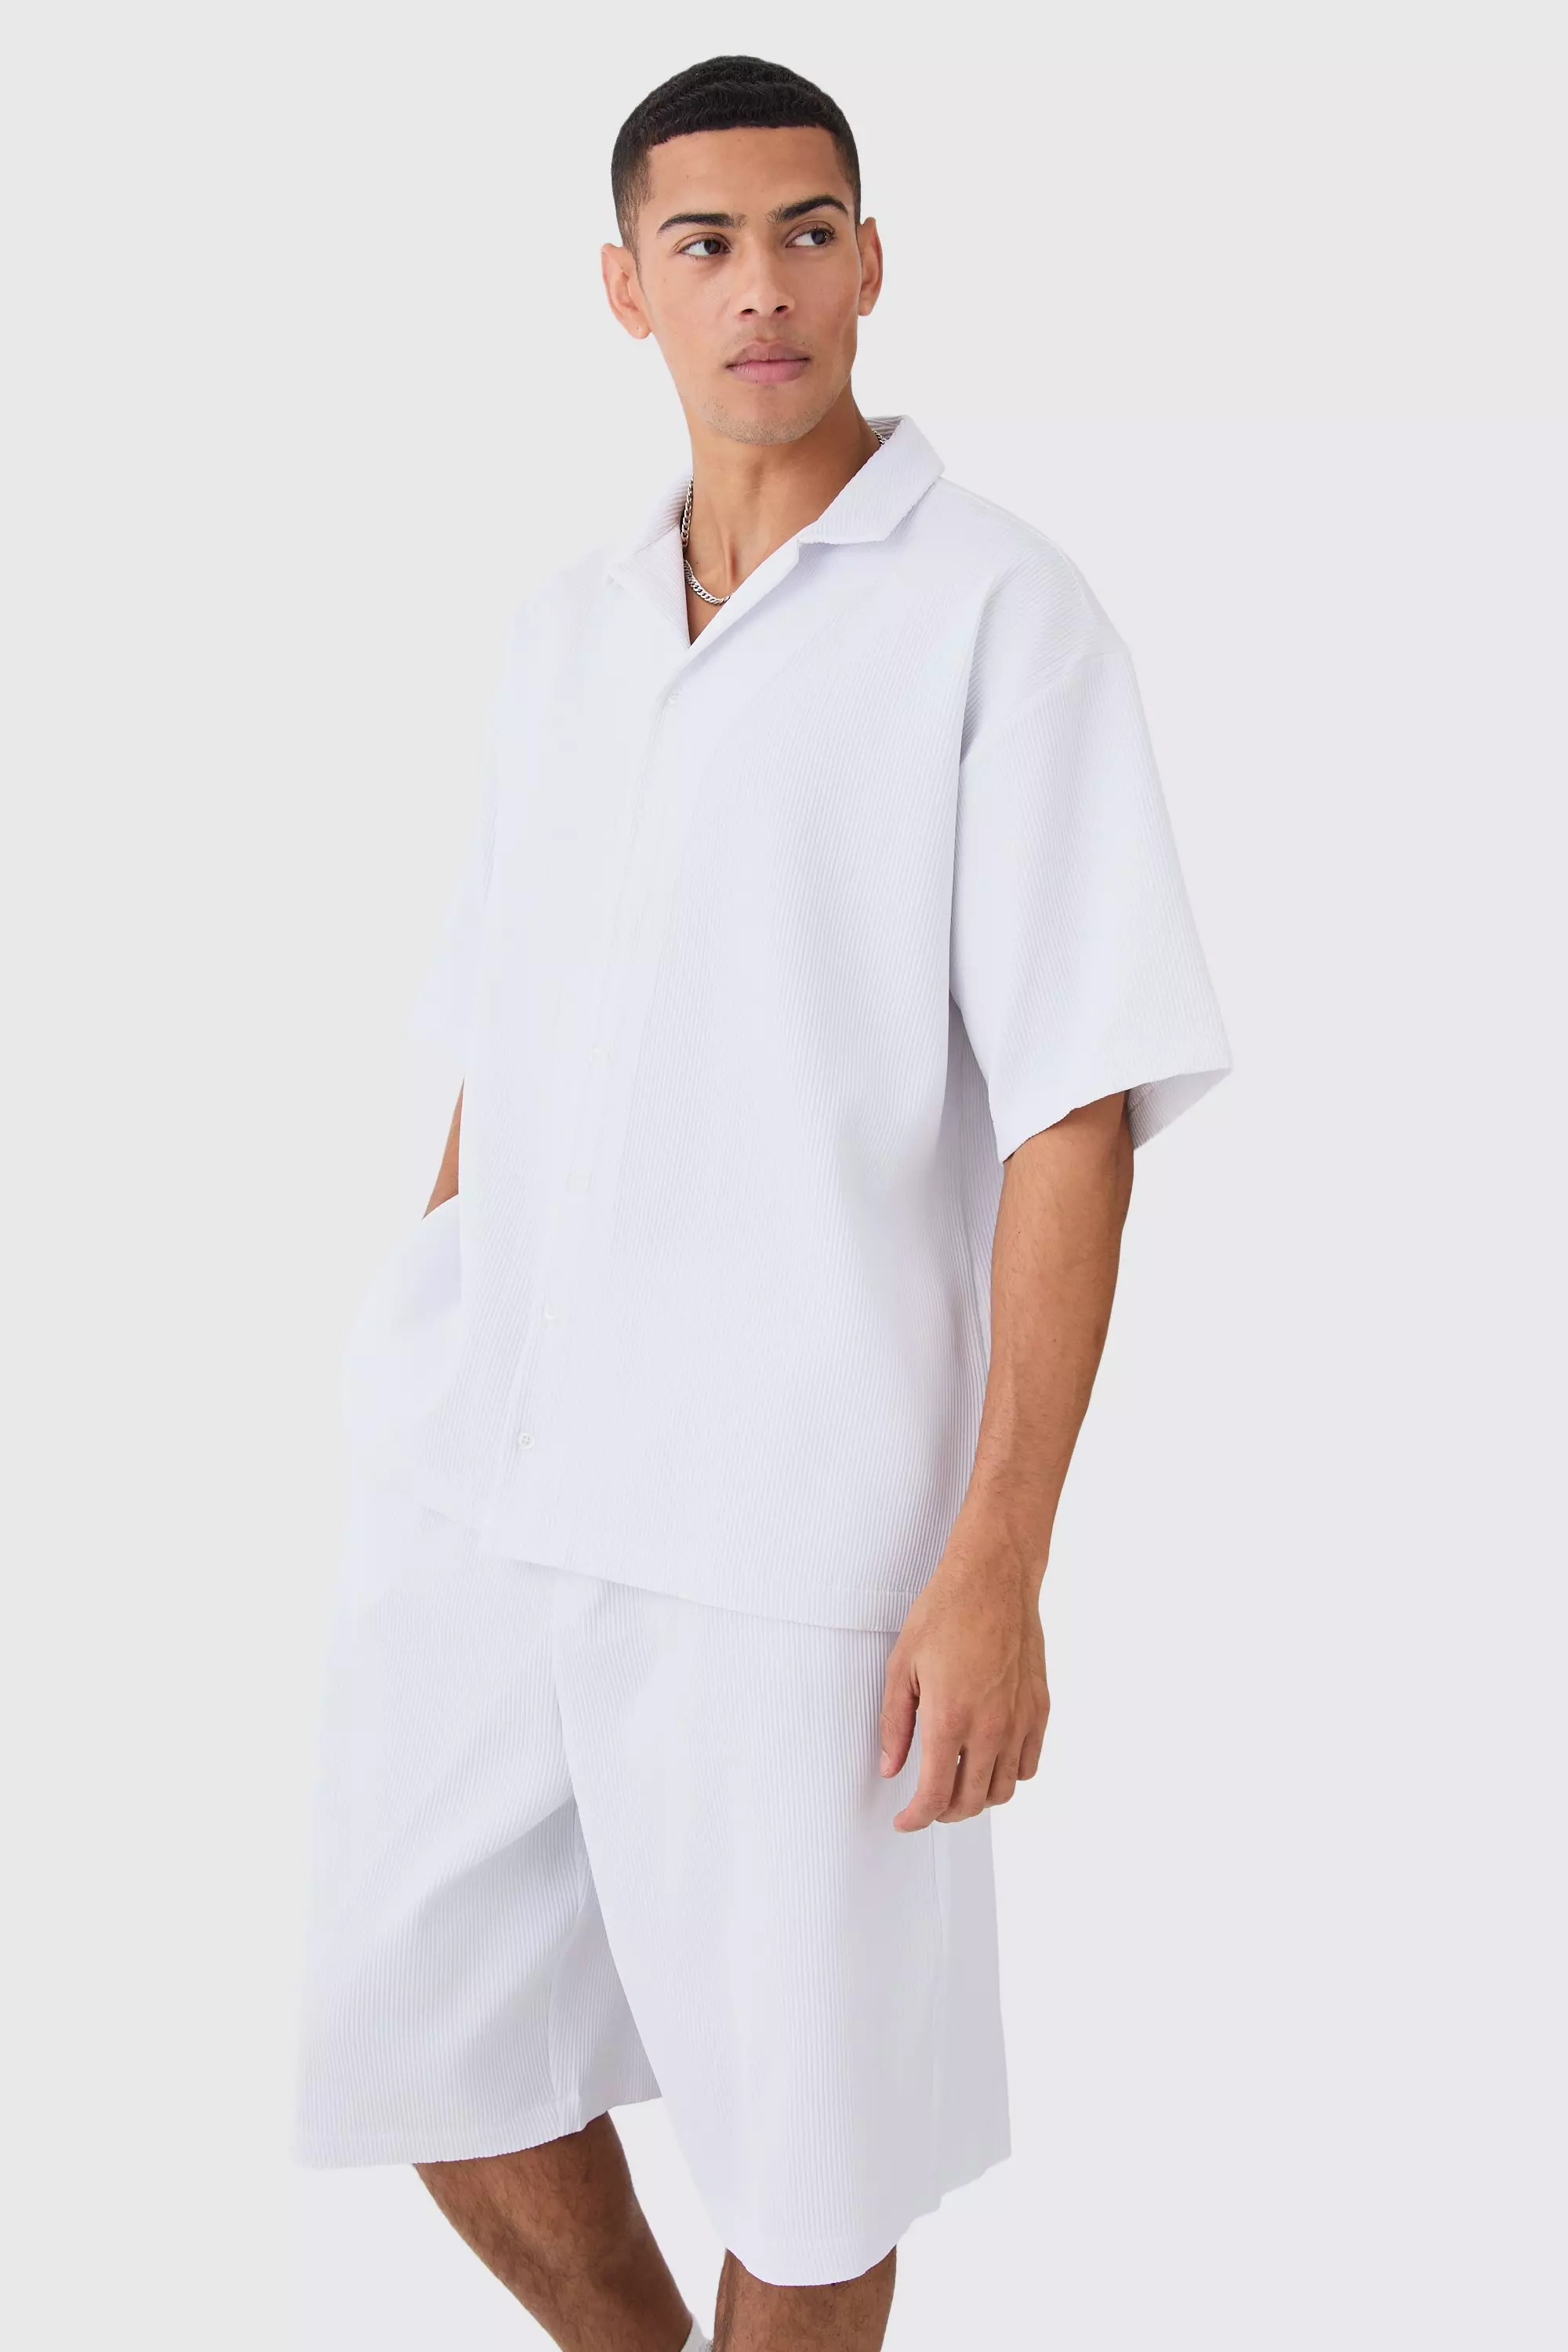 White Pleated Oversized Boxy Shirt And Short Set